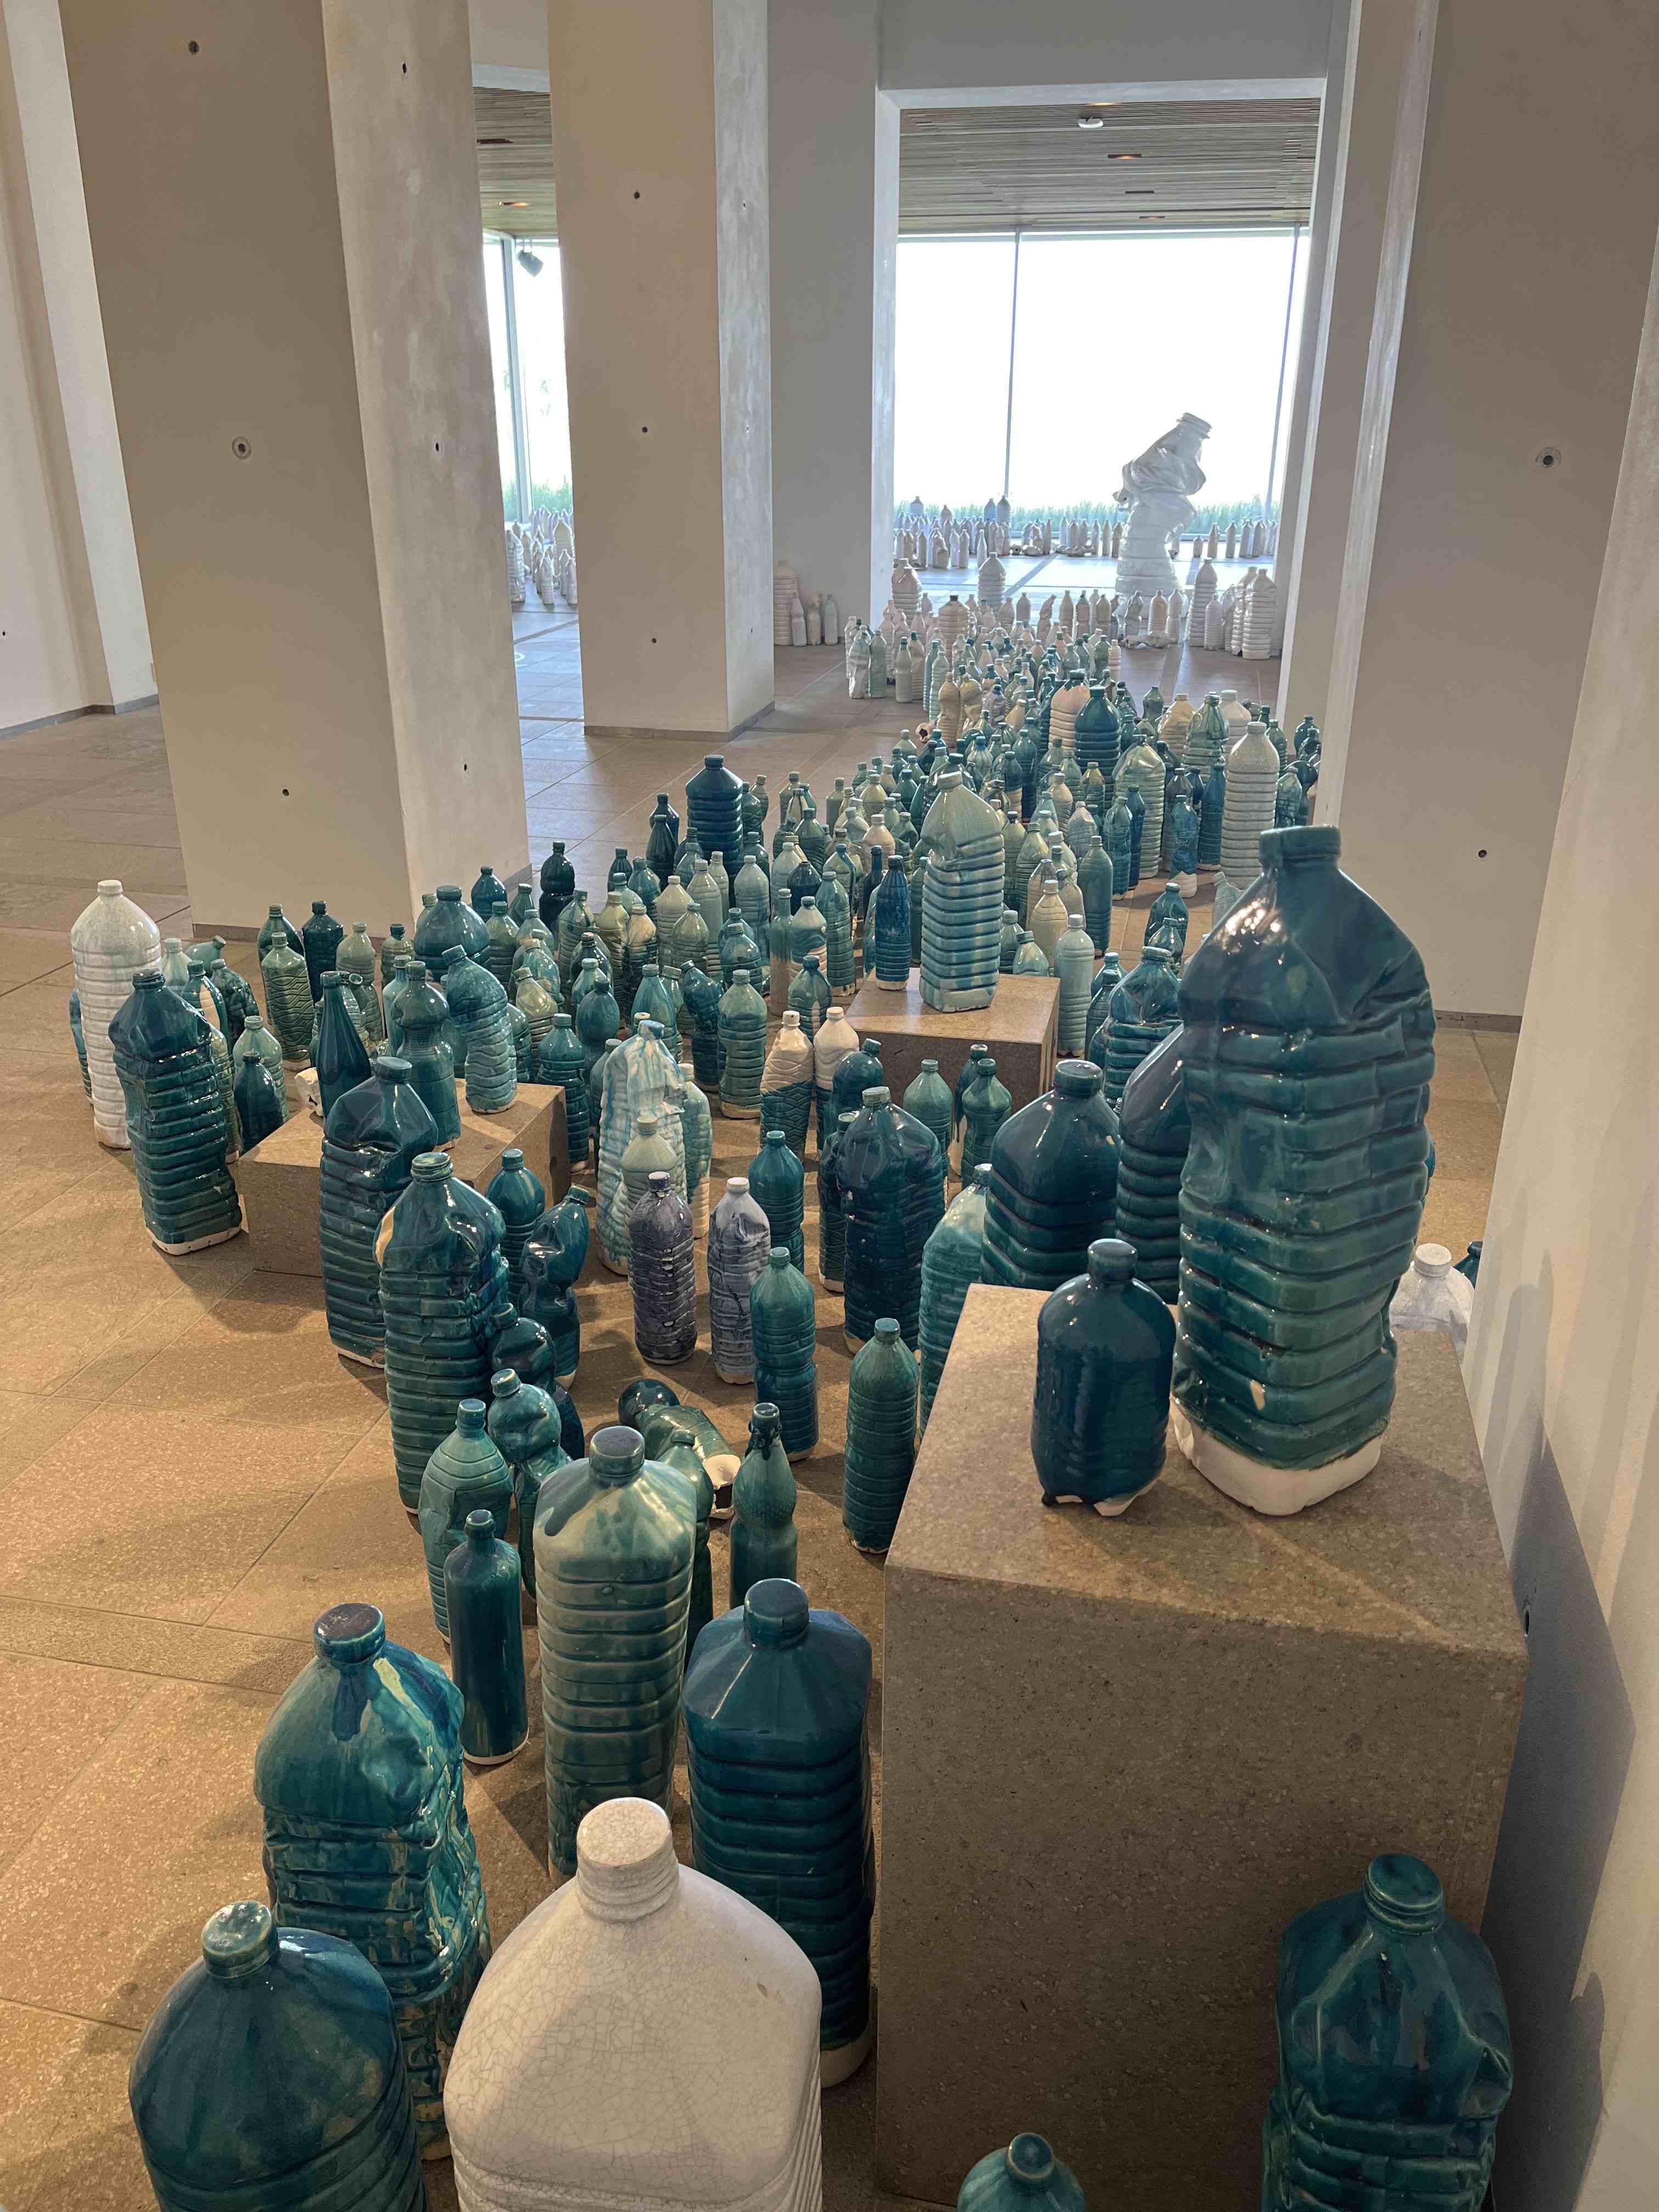 Ceramic bottles flowing through gallery at Beelden aan Zee